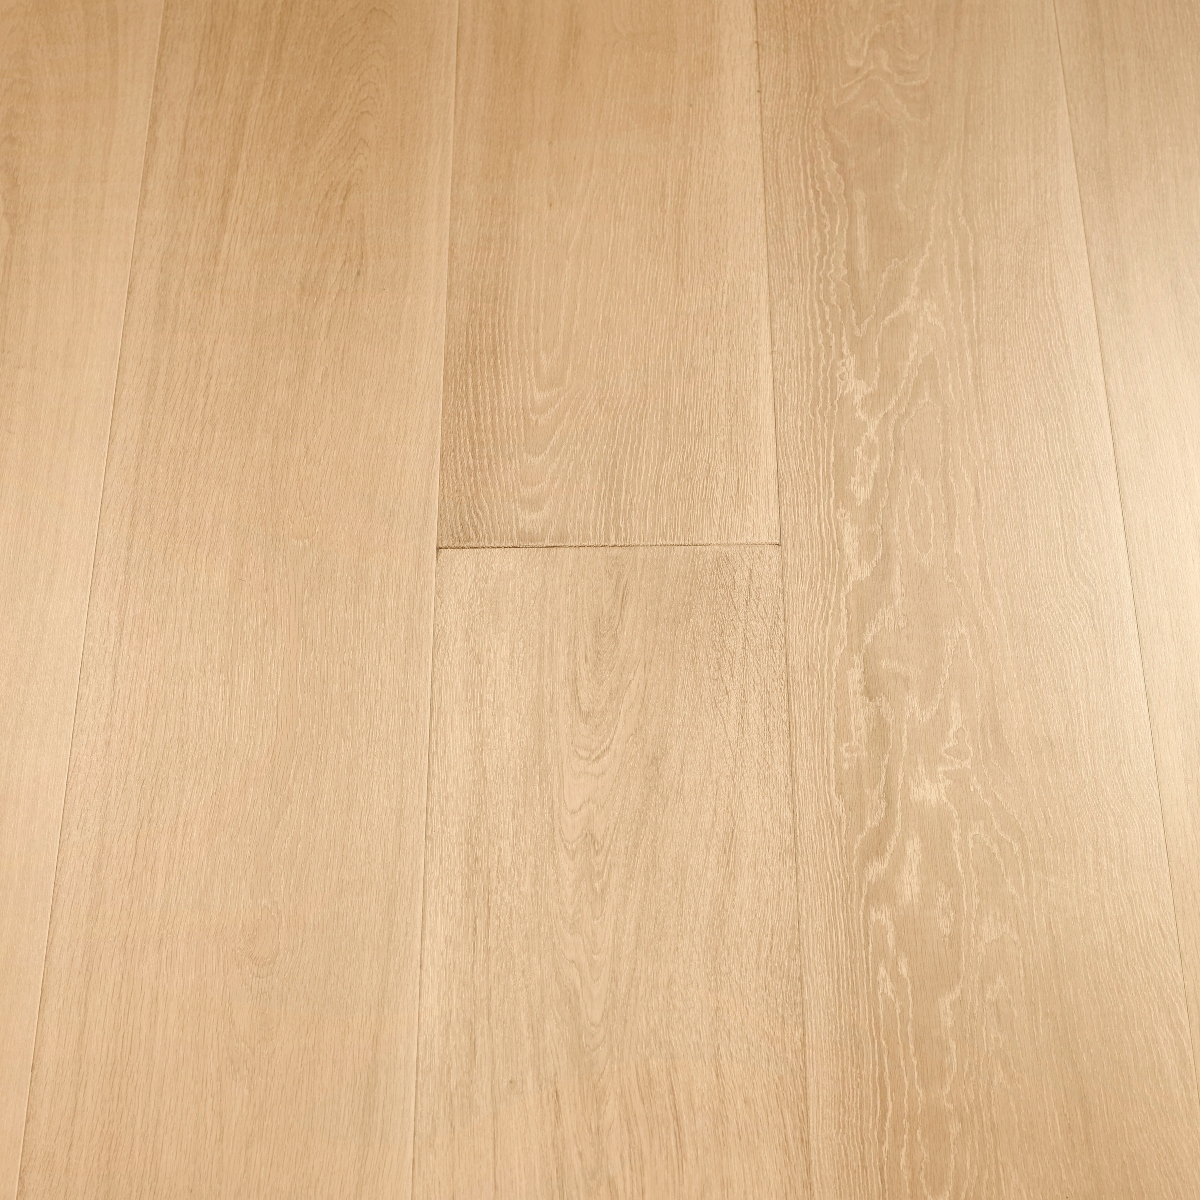 Mist 190mm x 18mm x 1900mm Bespoke Wood Flooring